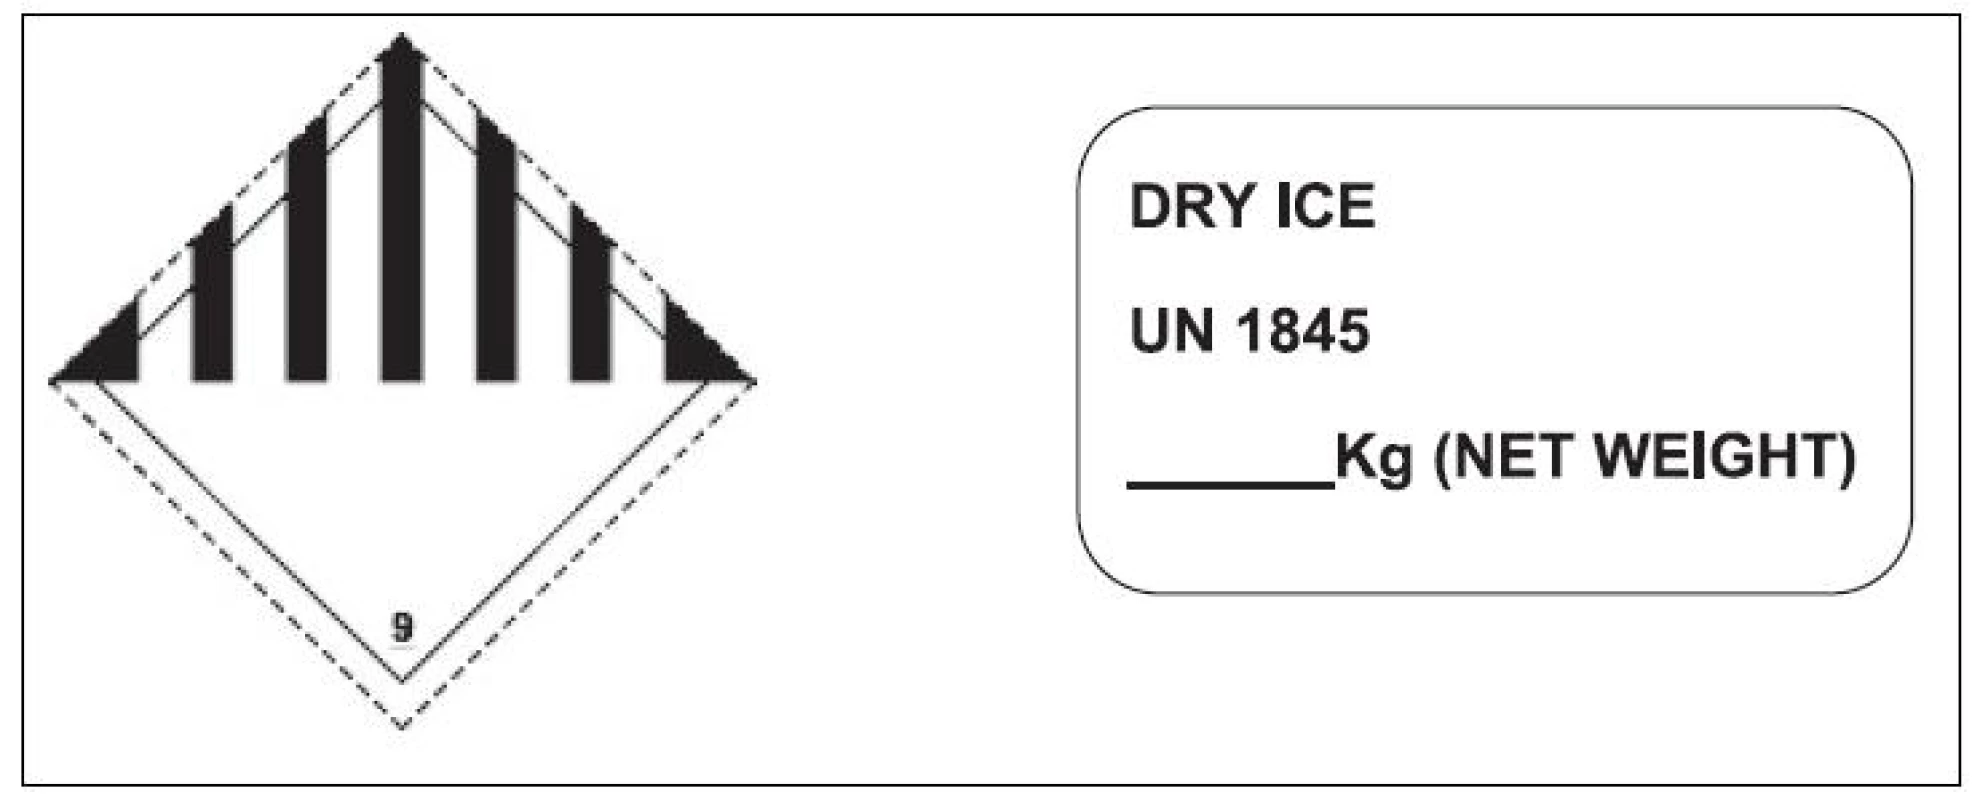 Značeni zásilky informující o přepravě suchého ledu
Fig. 3. Shipment labeling information on transportation of dry ice